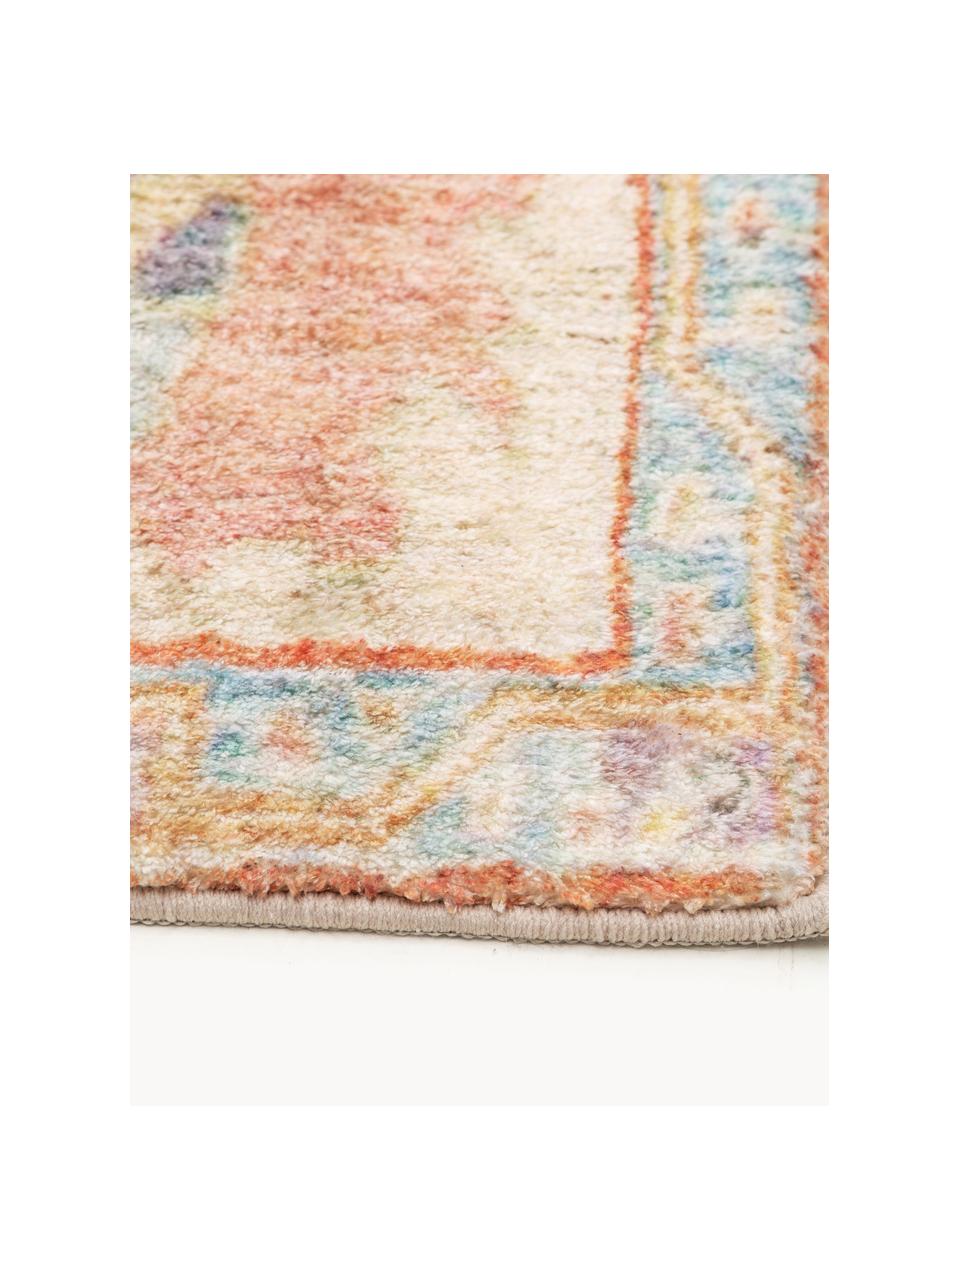 Teppich Mara mit Ornament-Muster, 100 % Polyester, Beige- und Orangetöne, B 80 x L 150 cm (Größe XS)